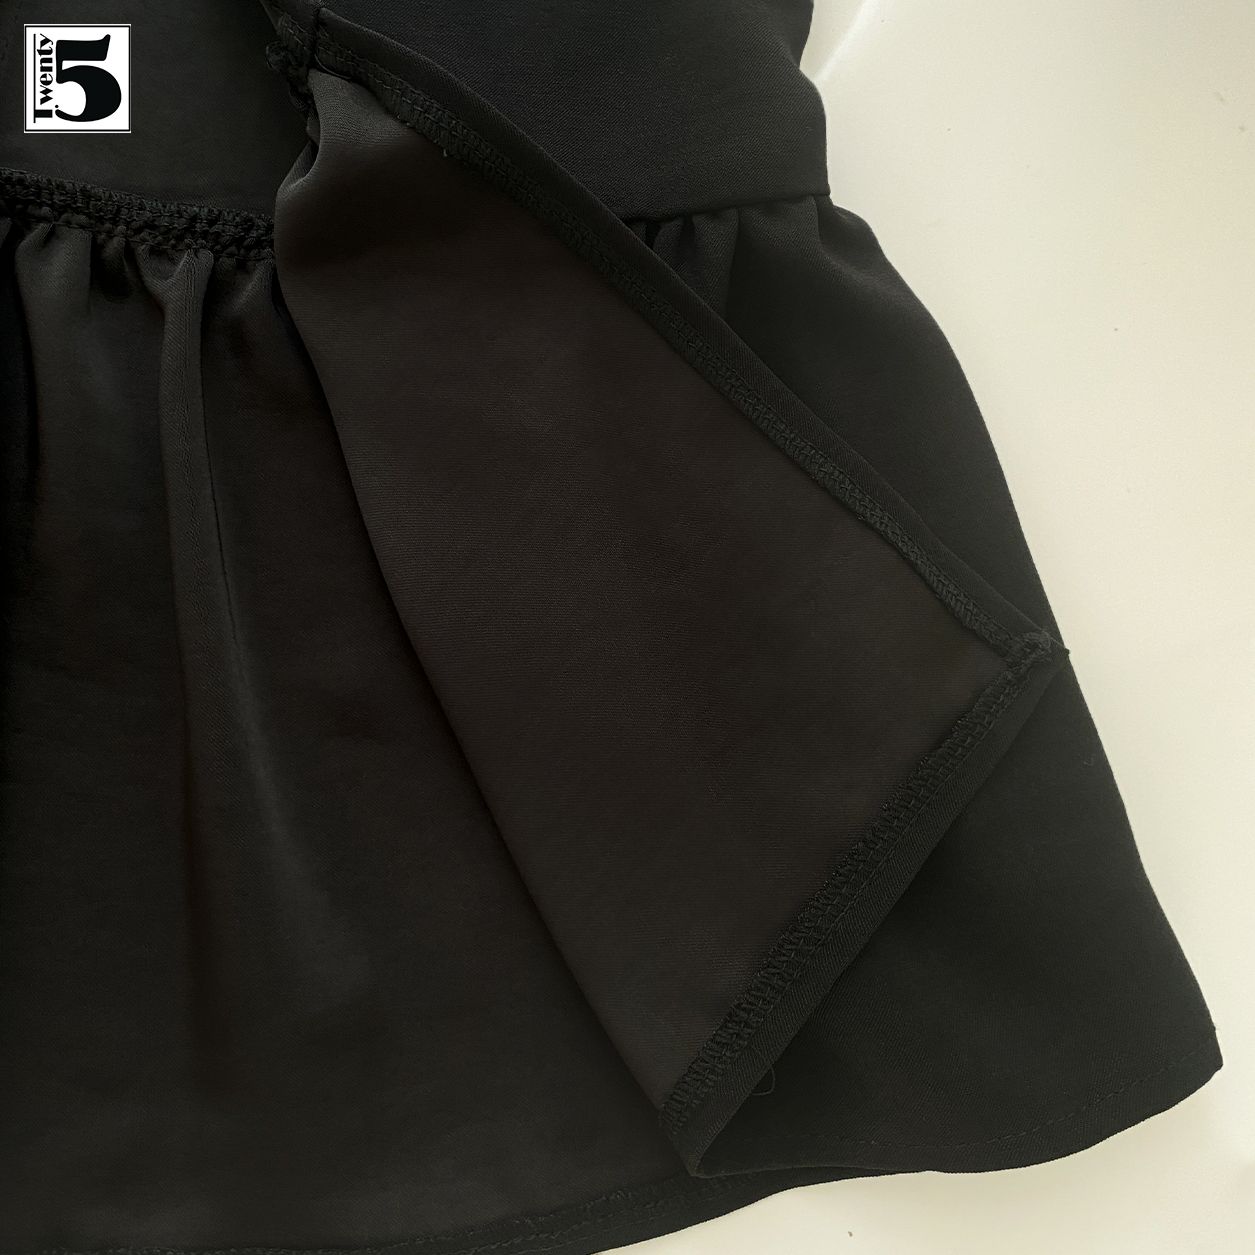 8 cách phối đồ với chân váy xòe đen cực chất cho nàng